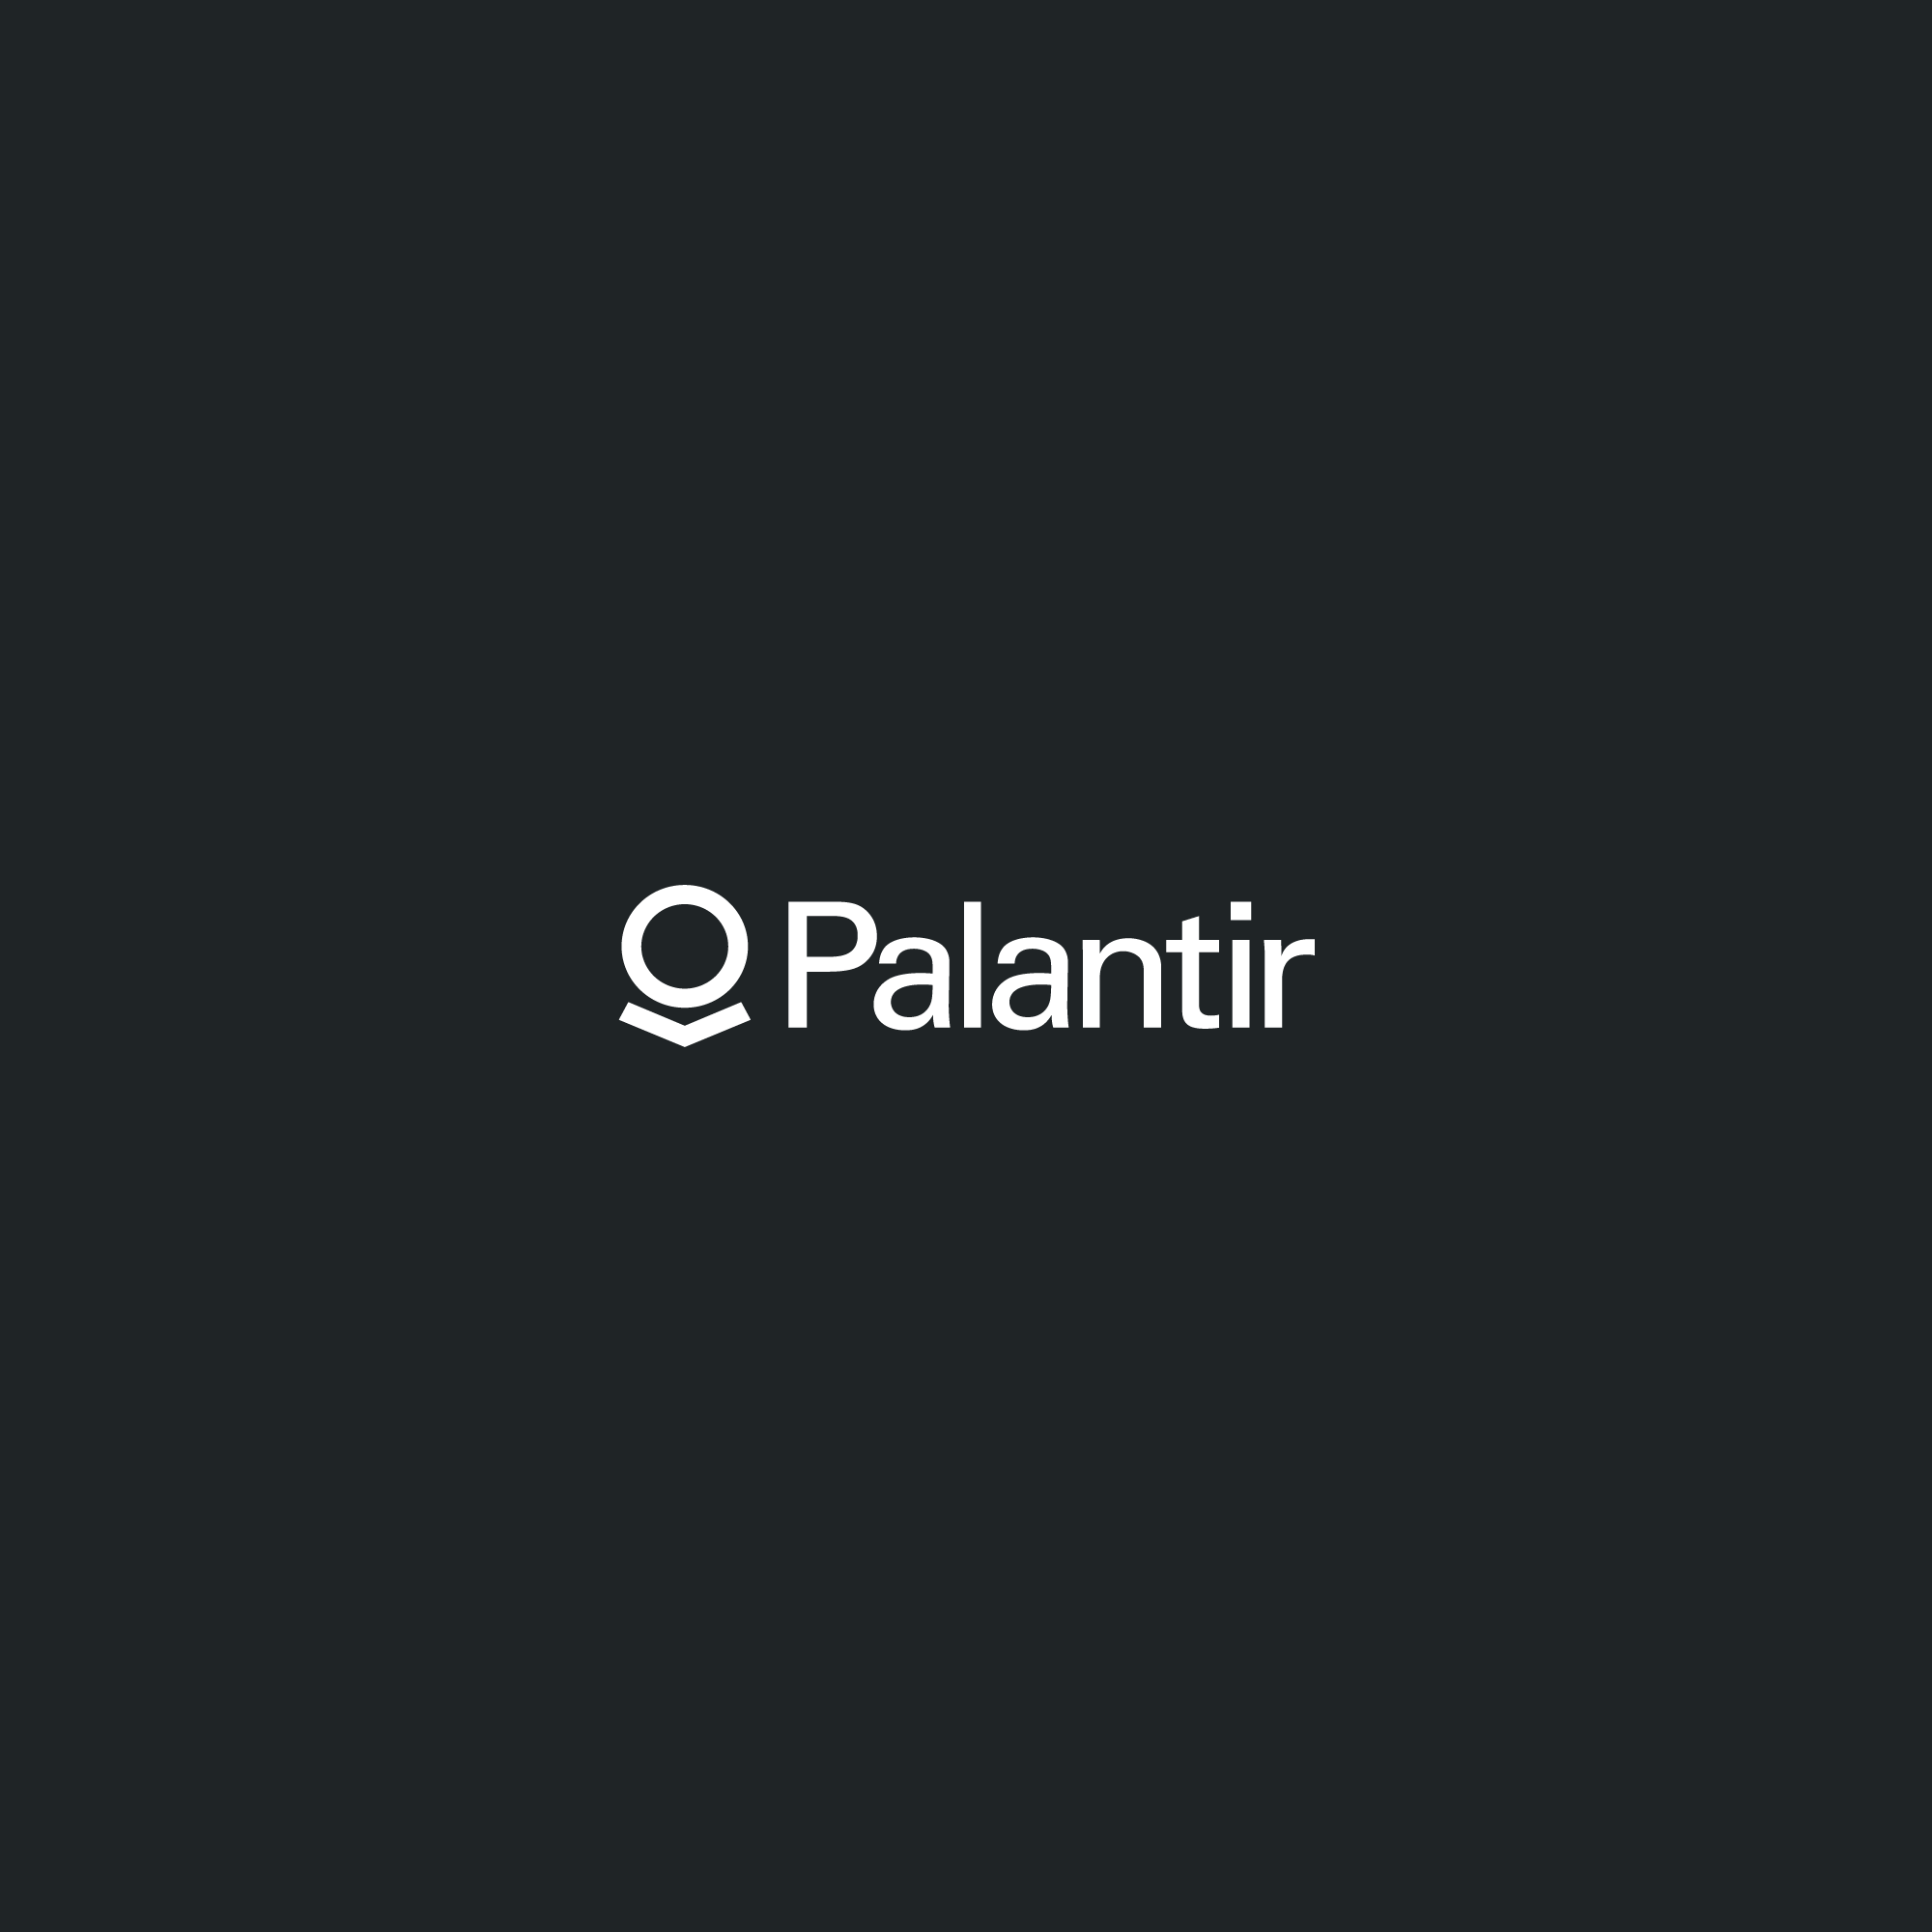 www.palantir.com